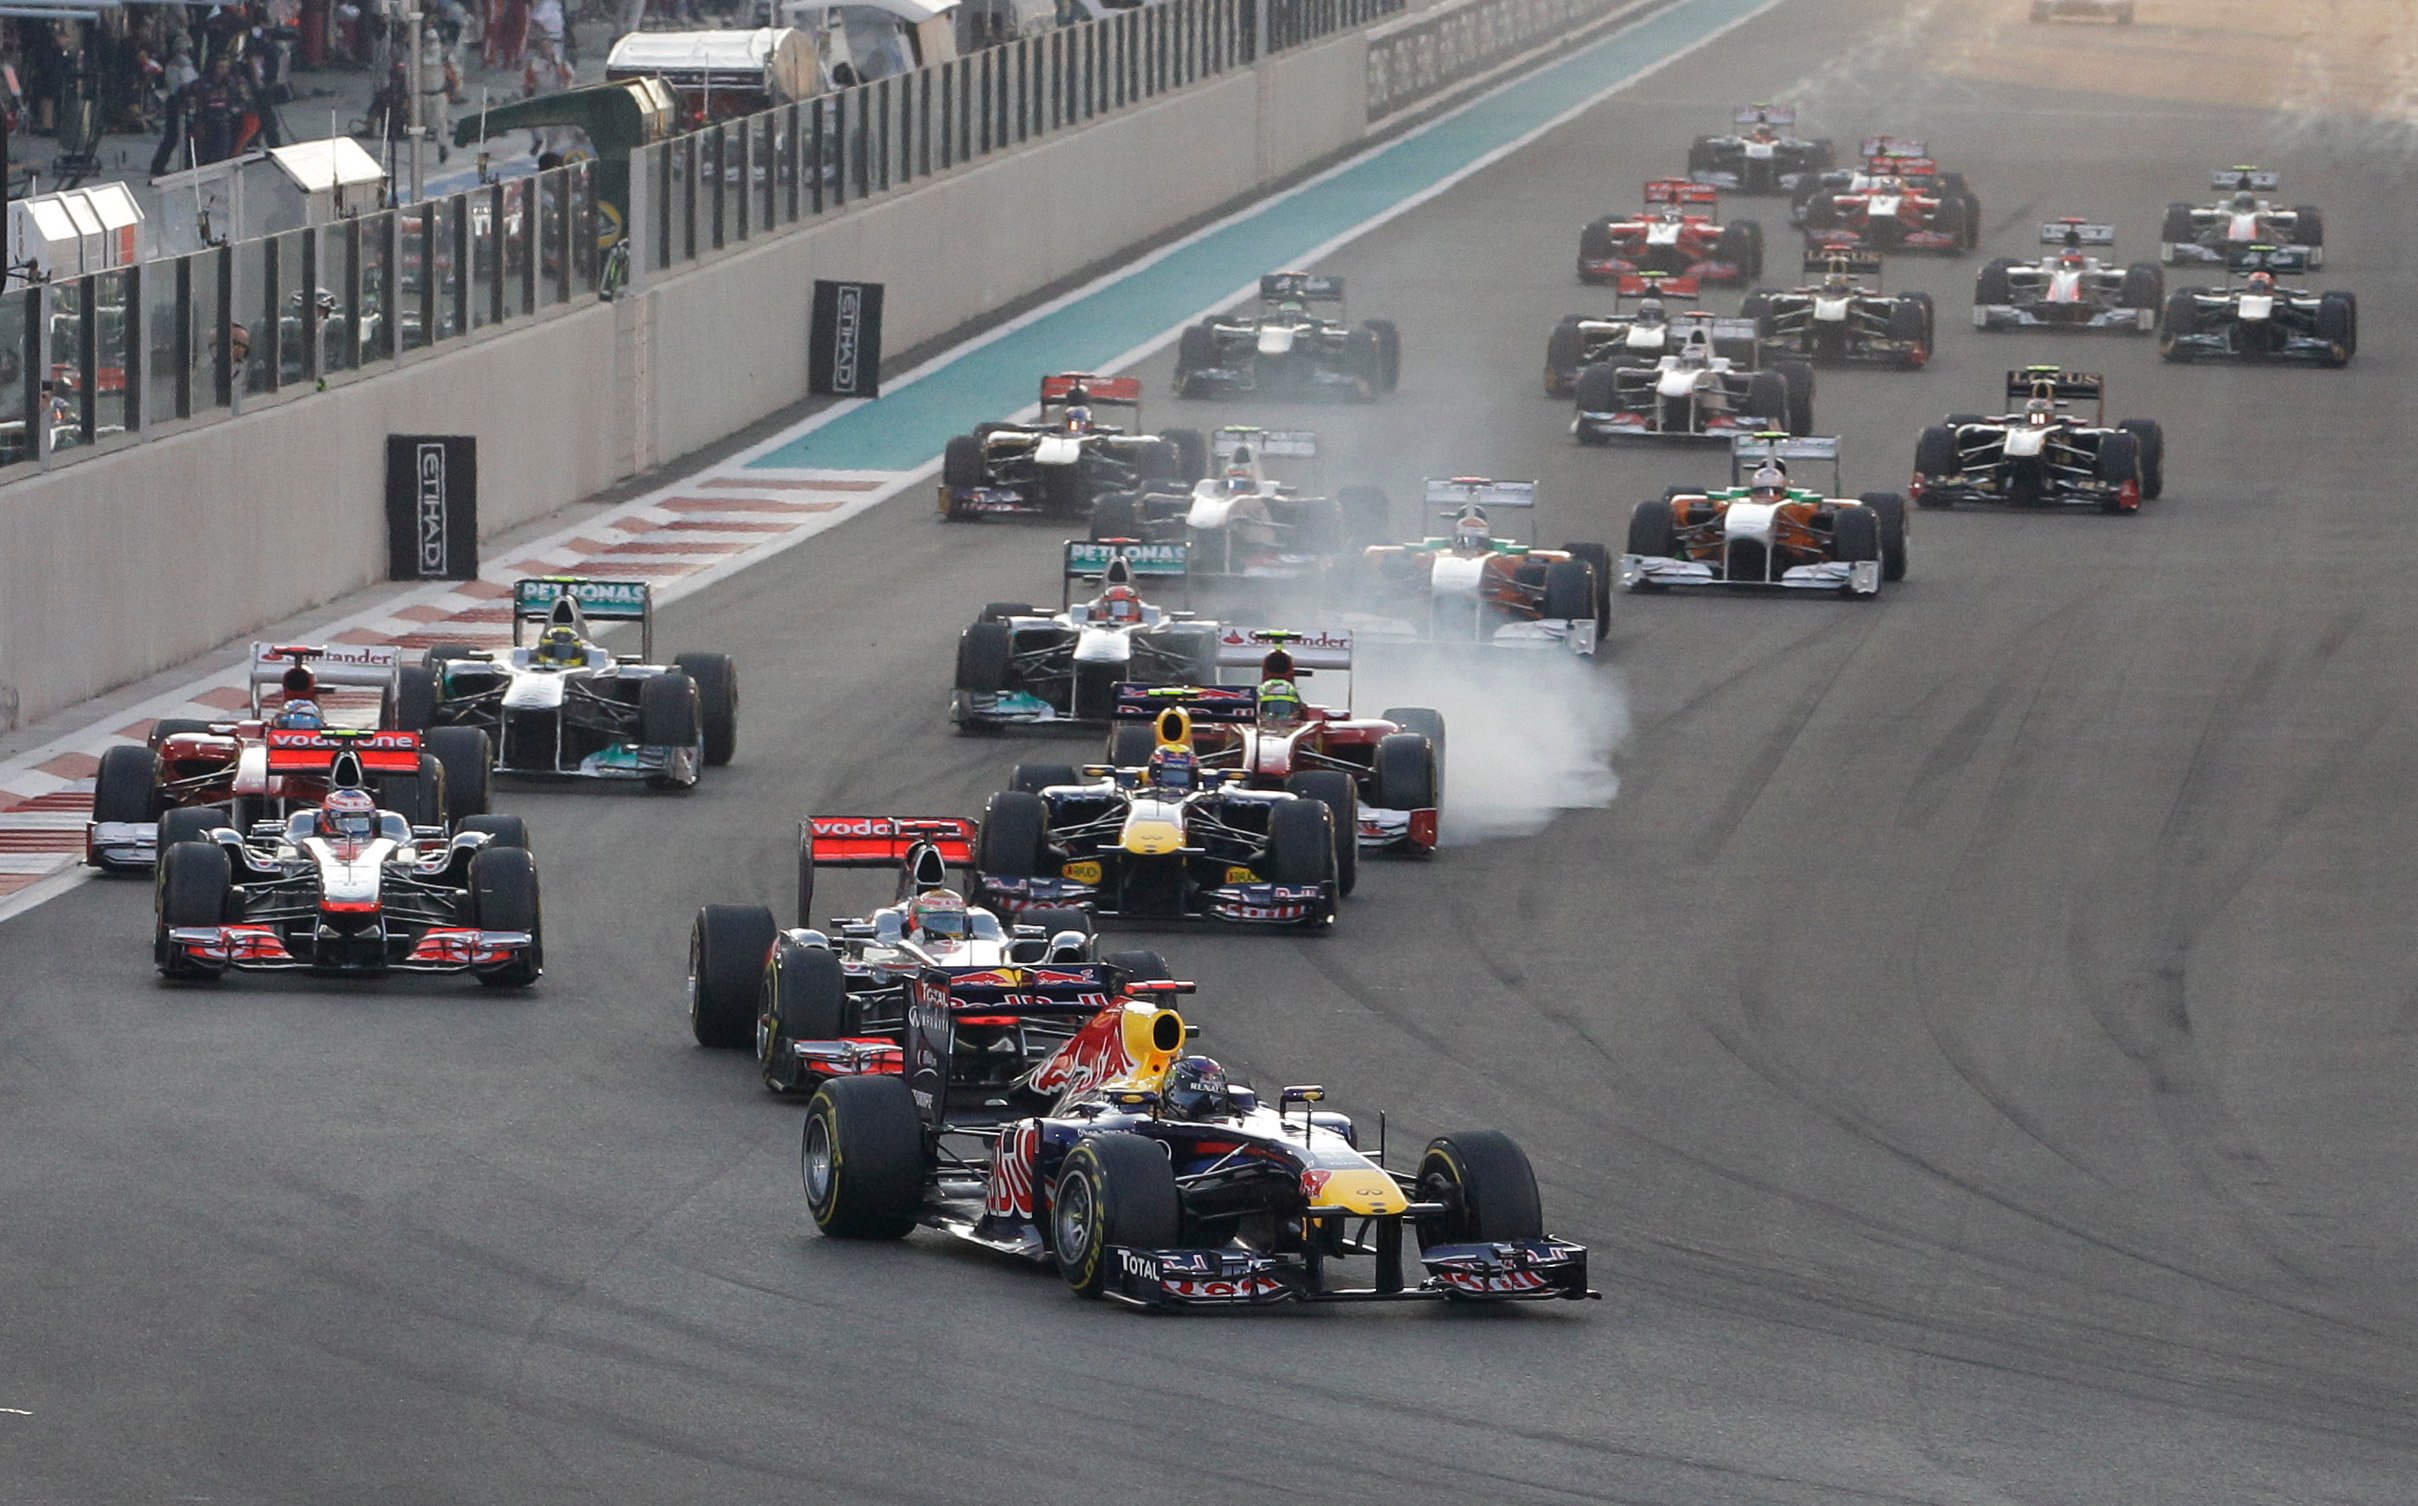 Jenson Button, Lewis Hamilton, Formel 1, Red Bull, Fernando Alonso, Nigel Mansell, Sebastian Vettel, Mark Webber, Abu Dhabi